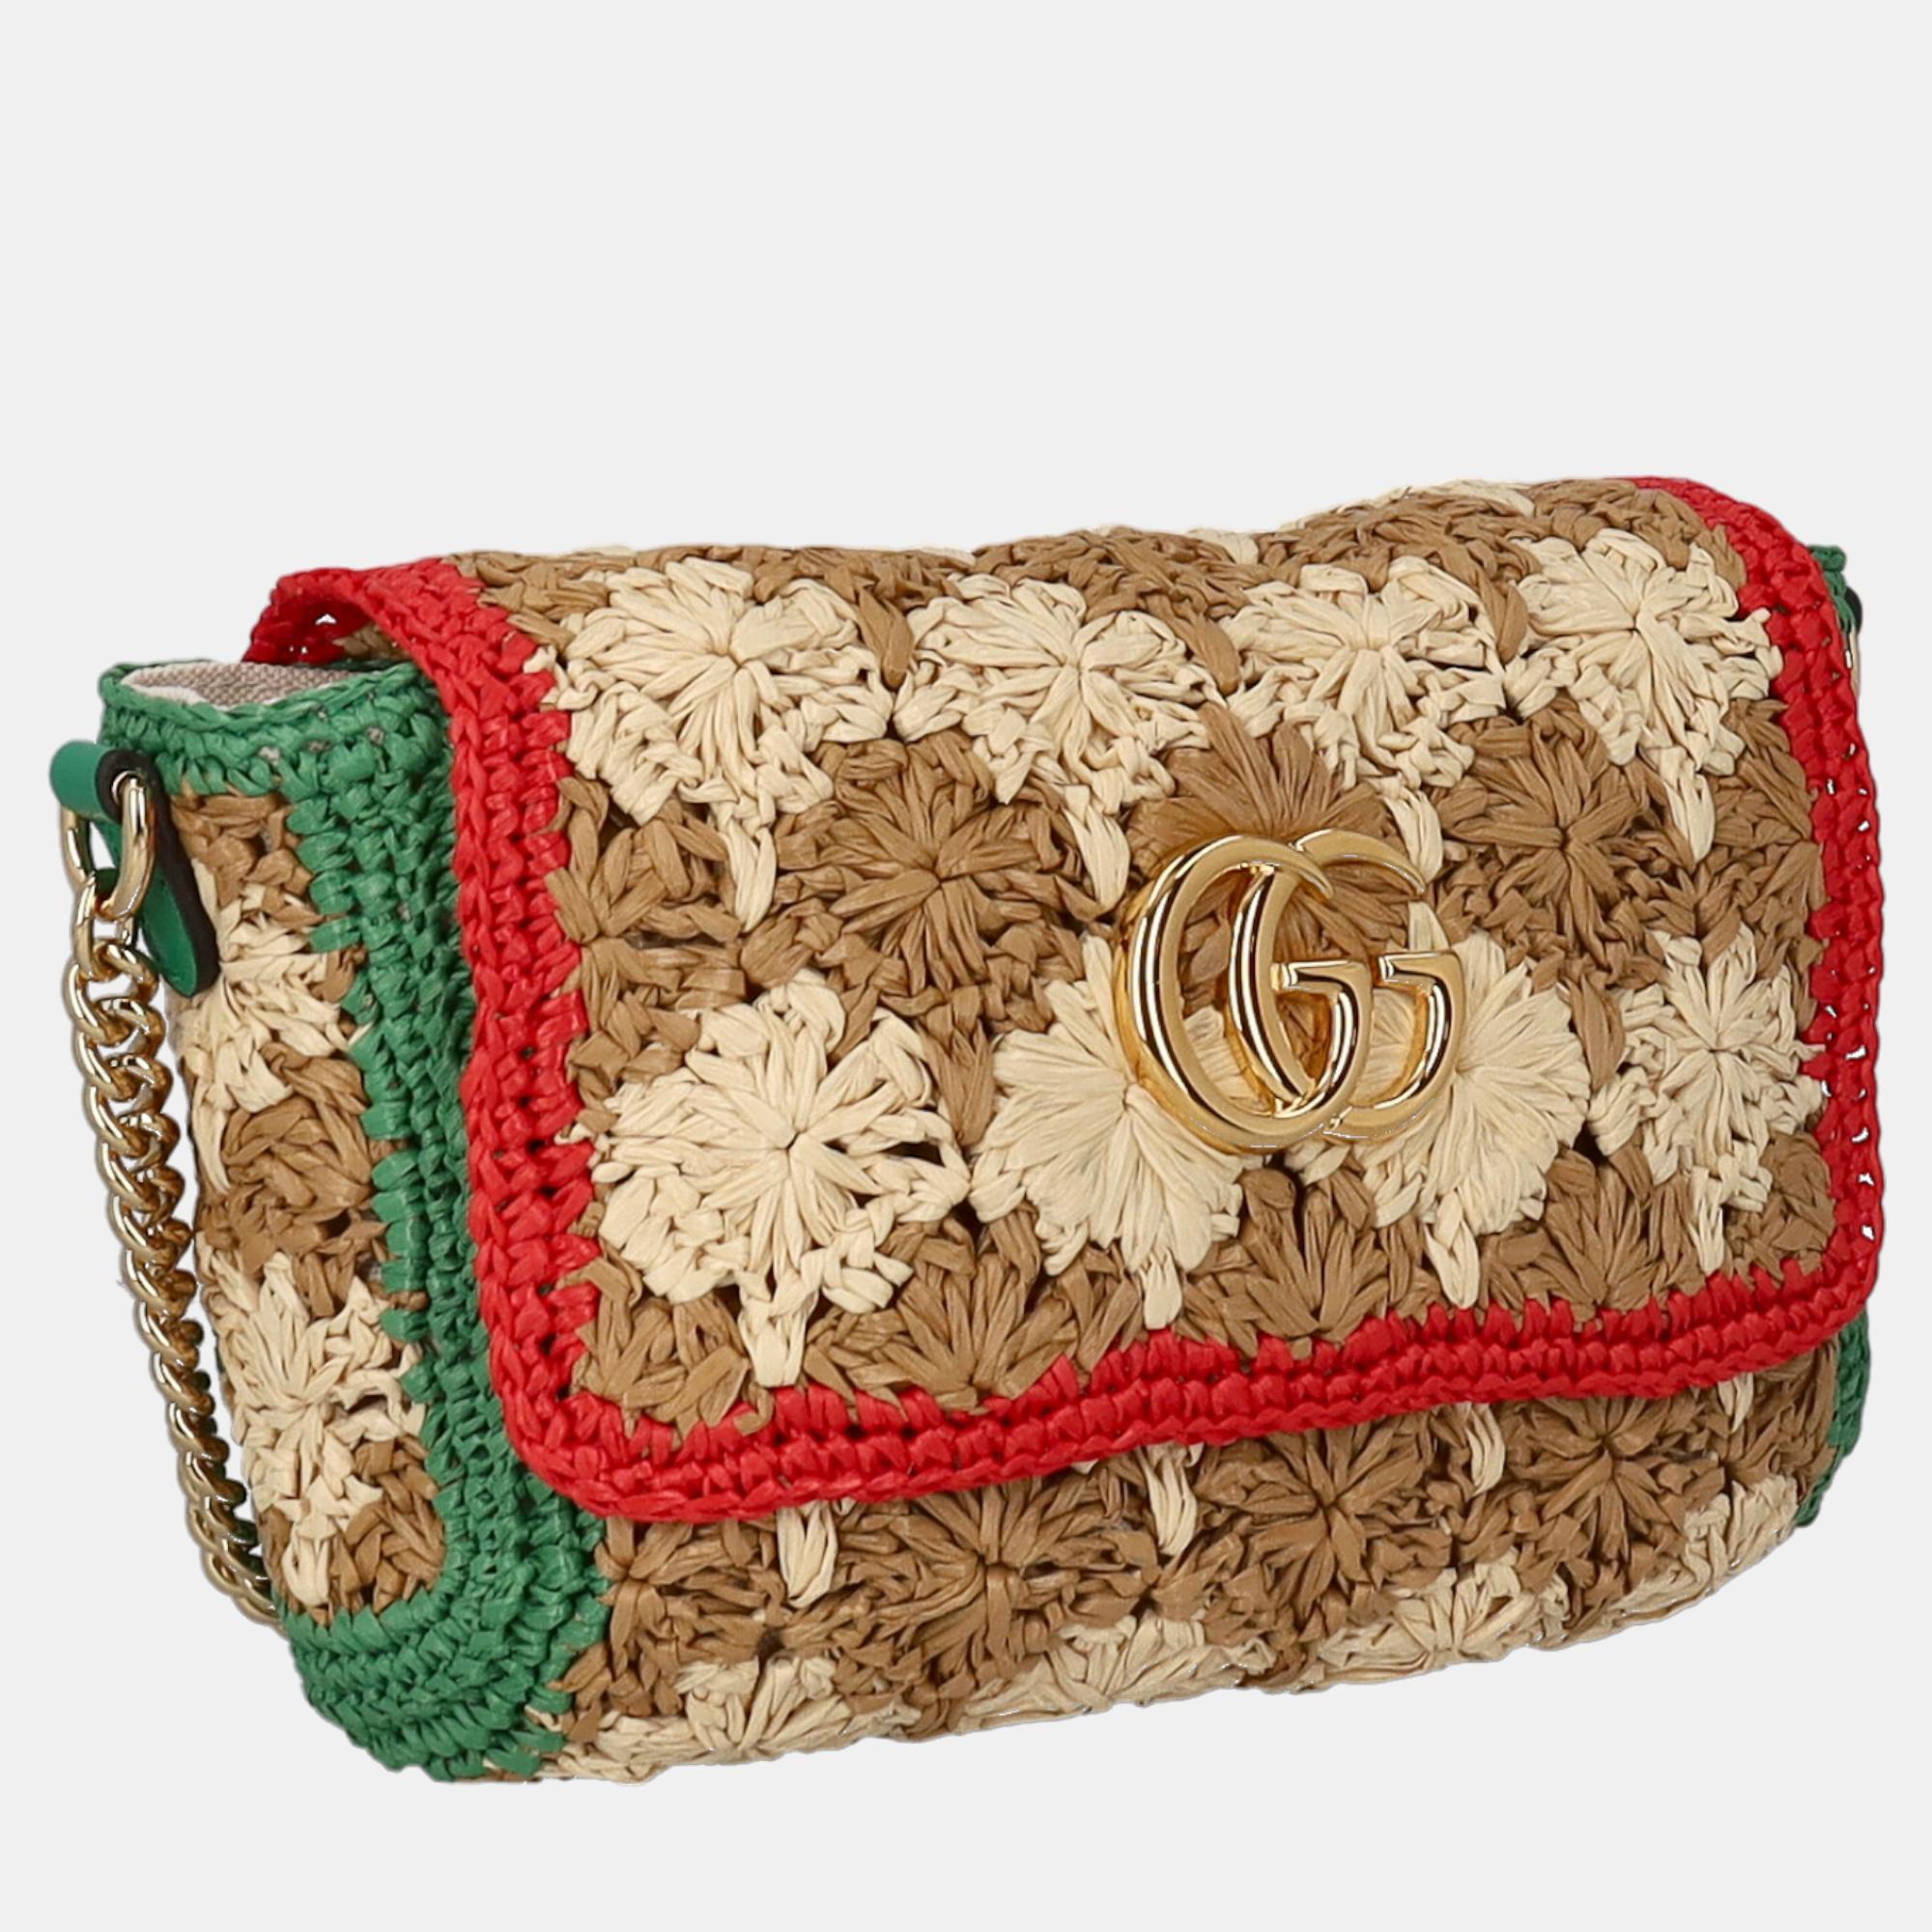 

Gucci Women's Eco-Friendly Fabric Cross Body Bag - Beige, Multicolor